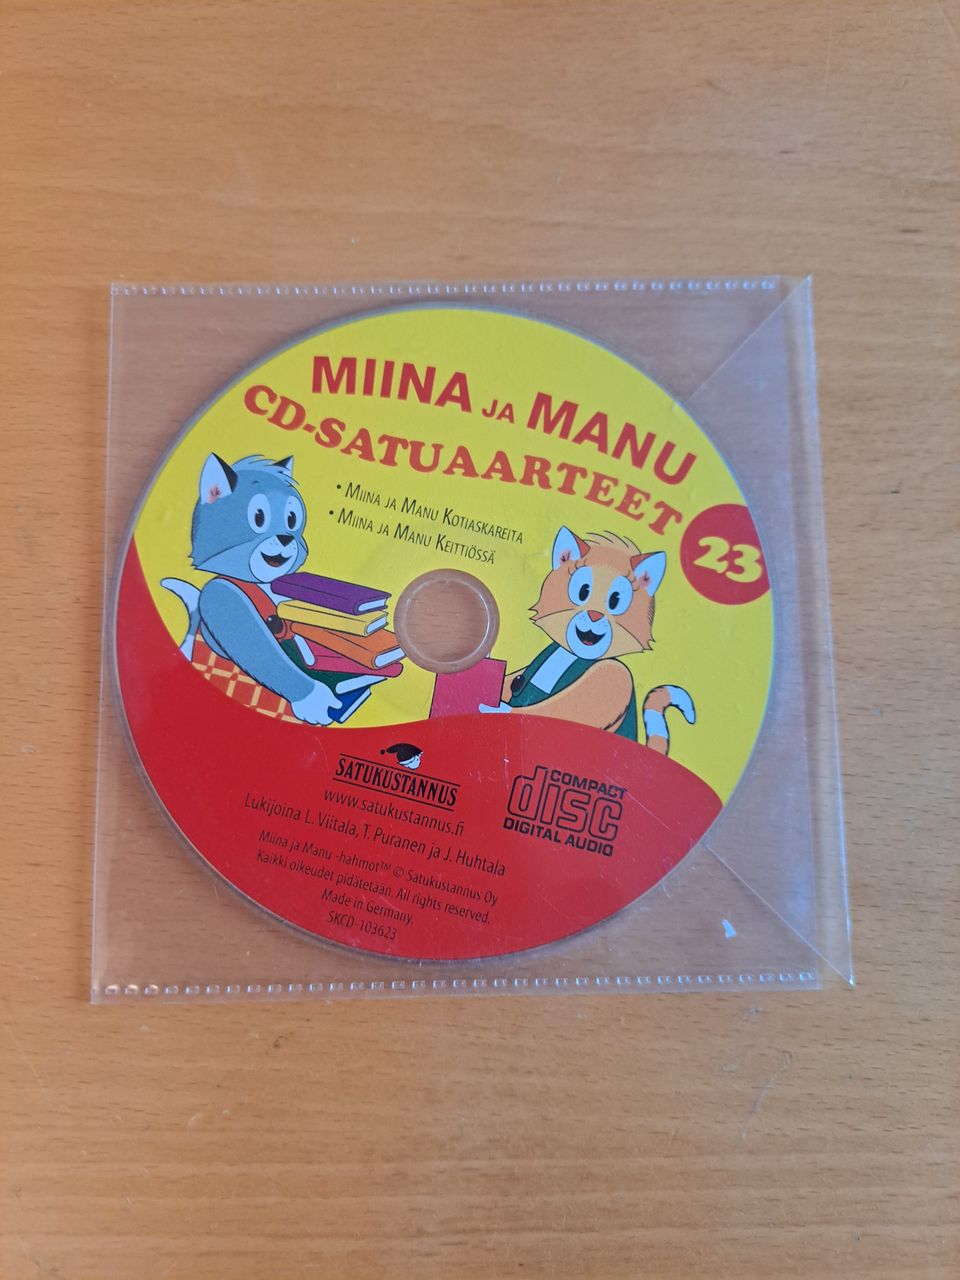 Miina ja Manu cd-satuaarteet 23